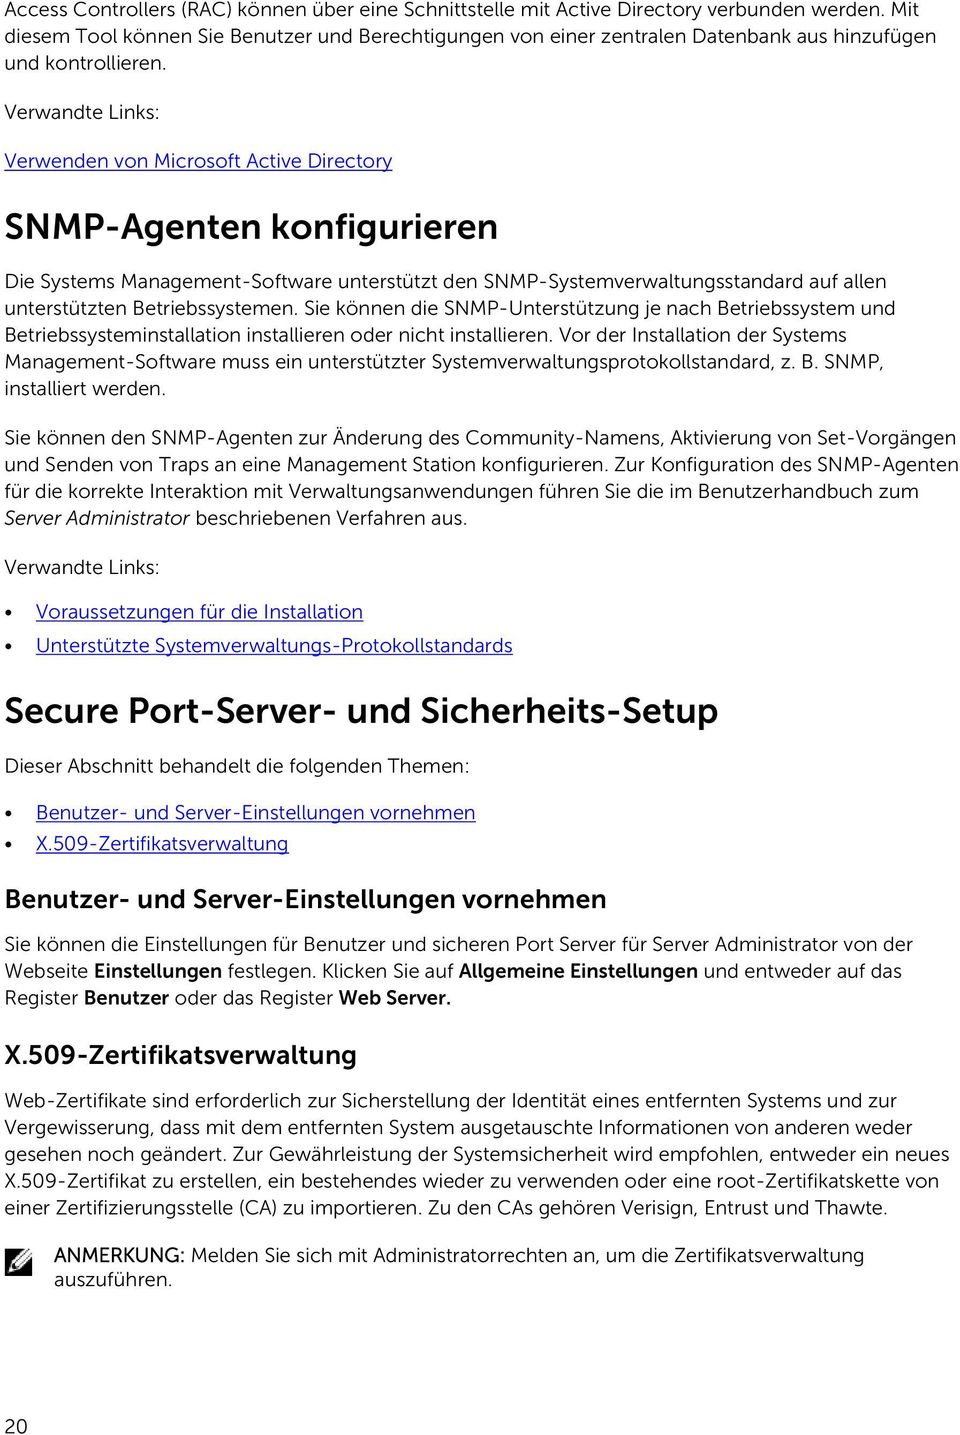 Verwandte Links: Verwenden von Microsoft Active Directory SNMP-Agenten konfigurieren Die Systems Management-Software unterstützt den SNMP-Systemverwaltungsstandard auf allen unterstützten